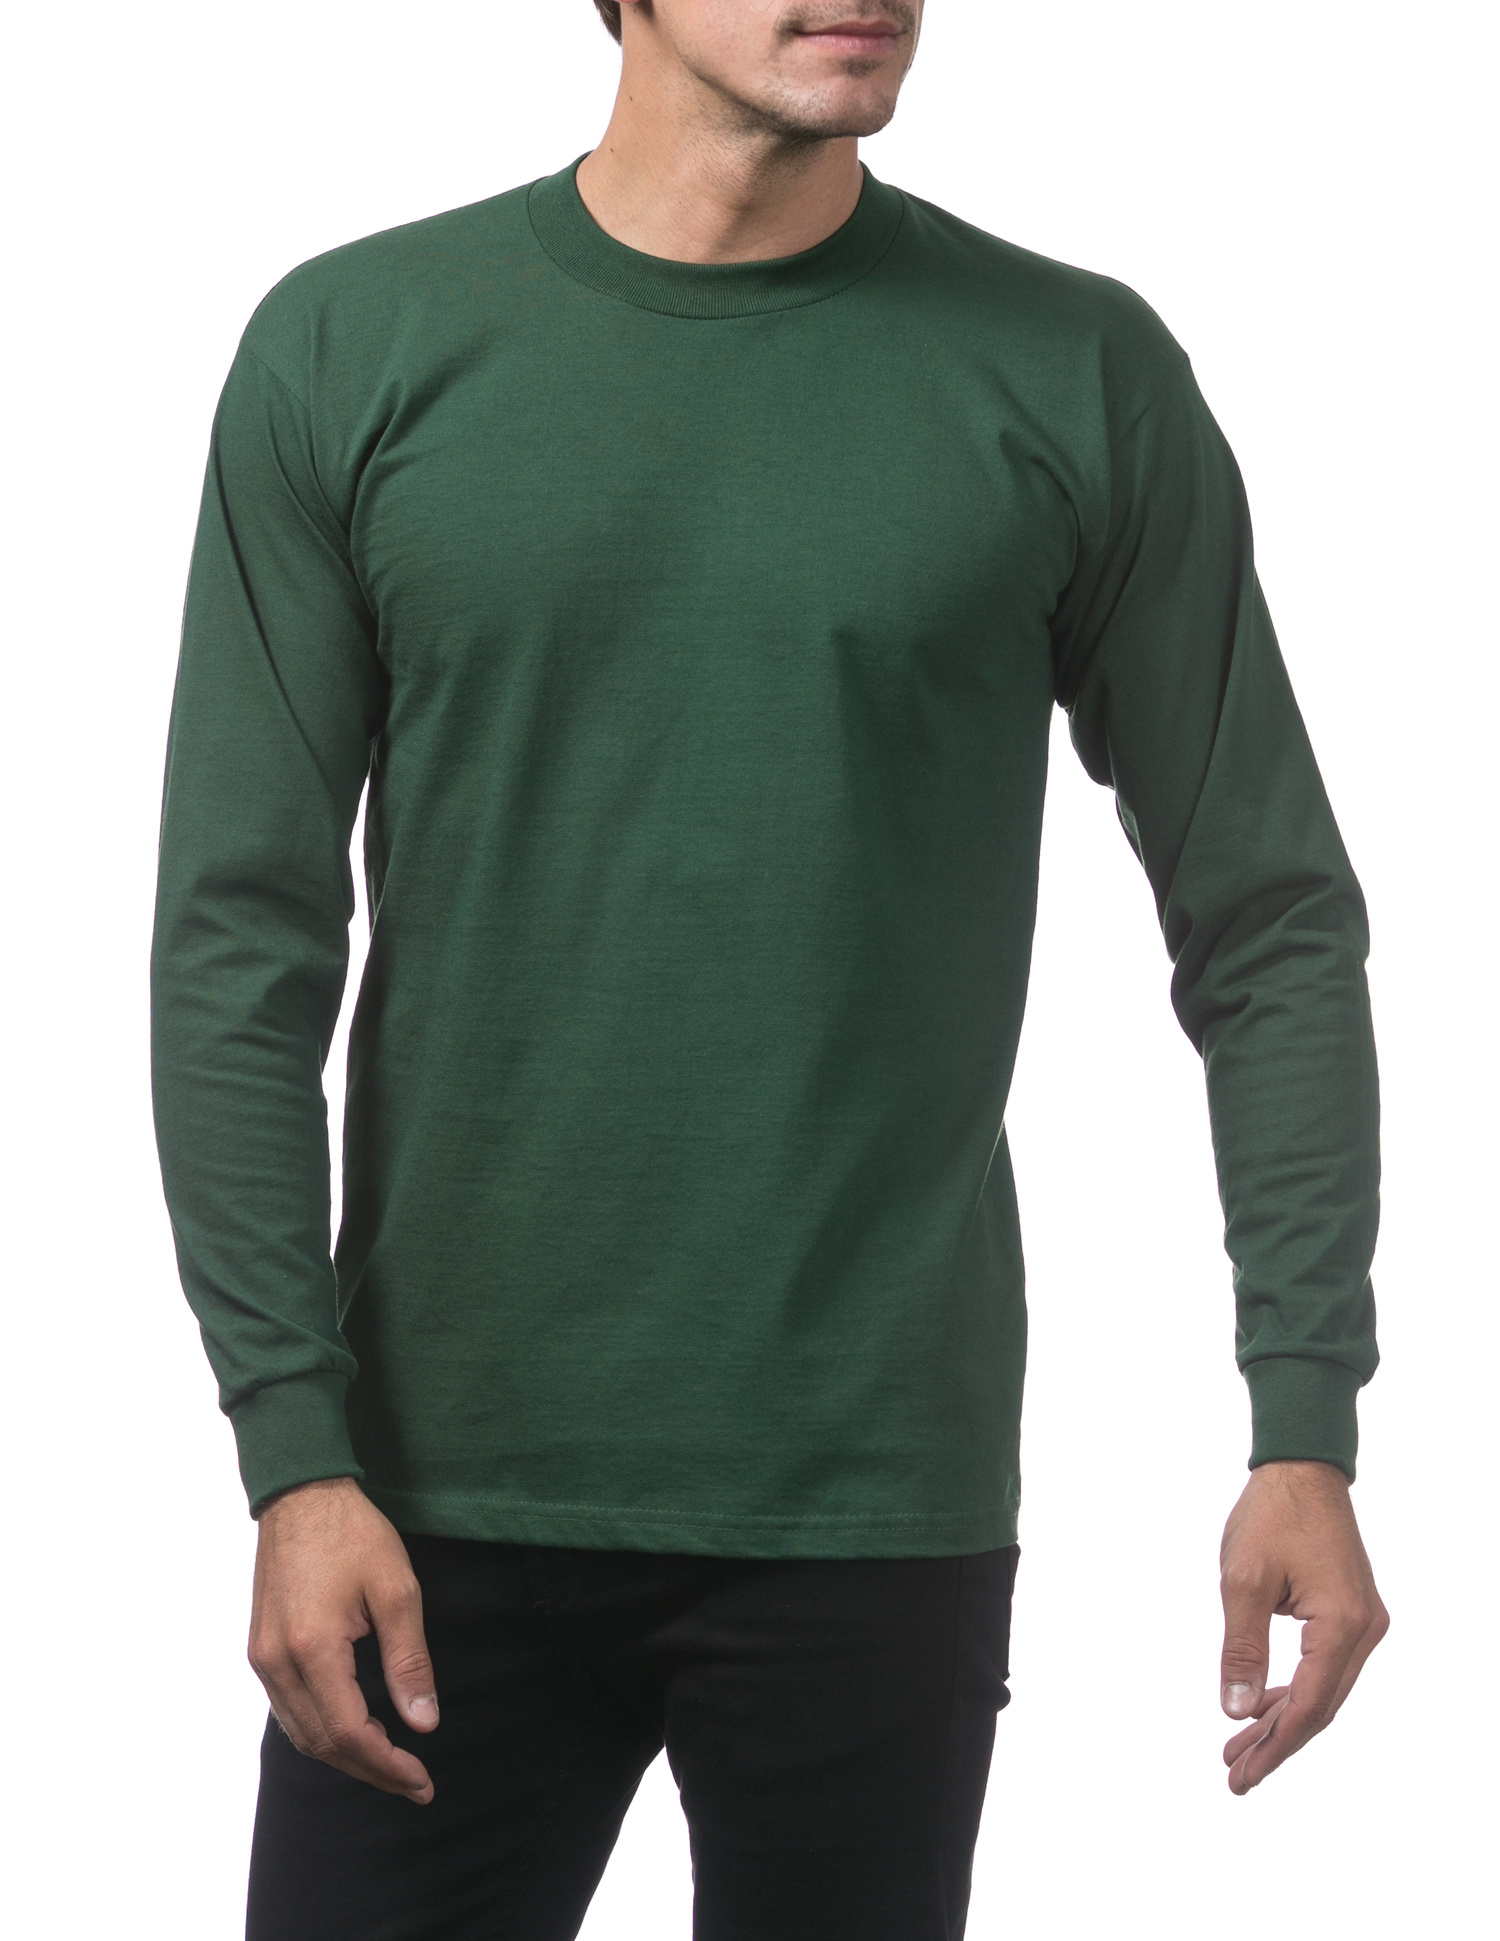 114 FOREST GREEN Heavyweight Cotton Long Sleeve Crew Neck T-Shirt - Shirts